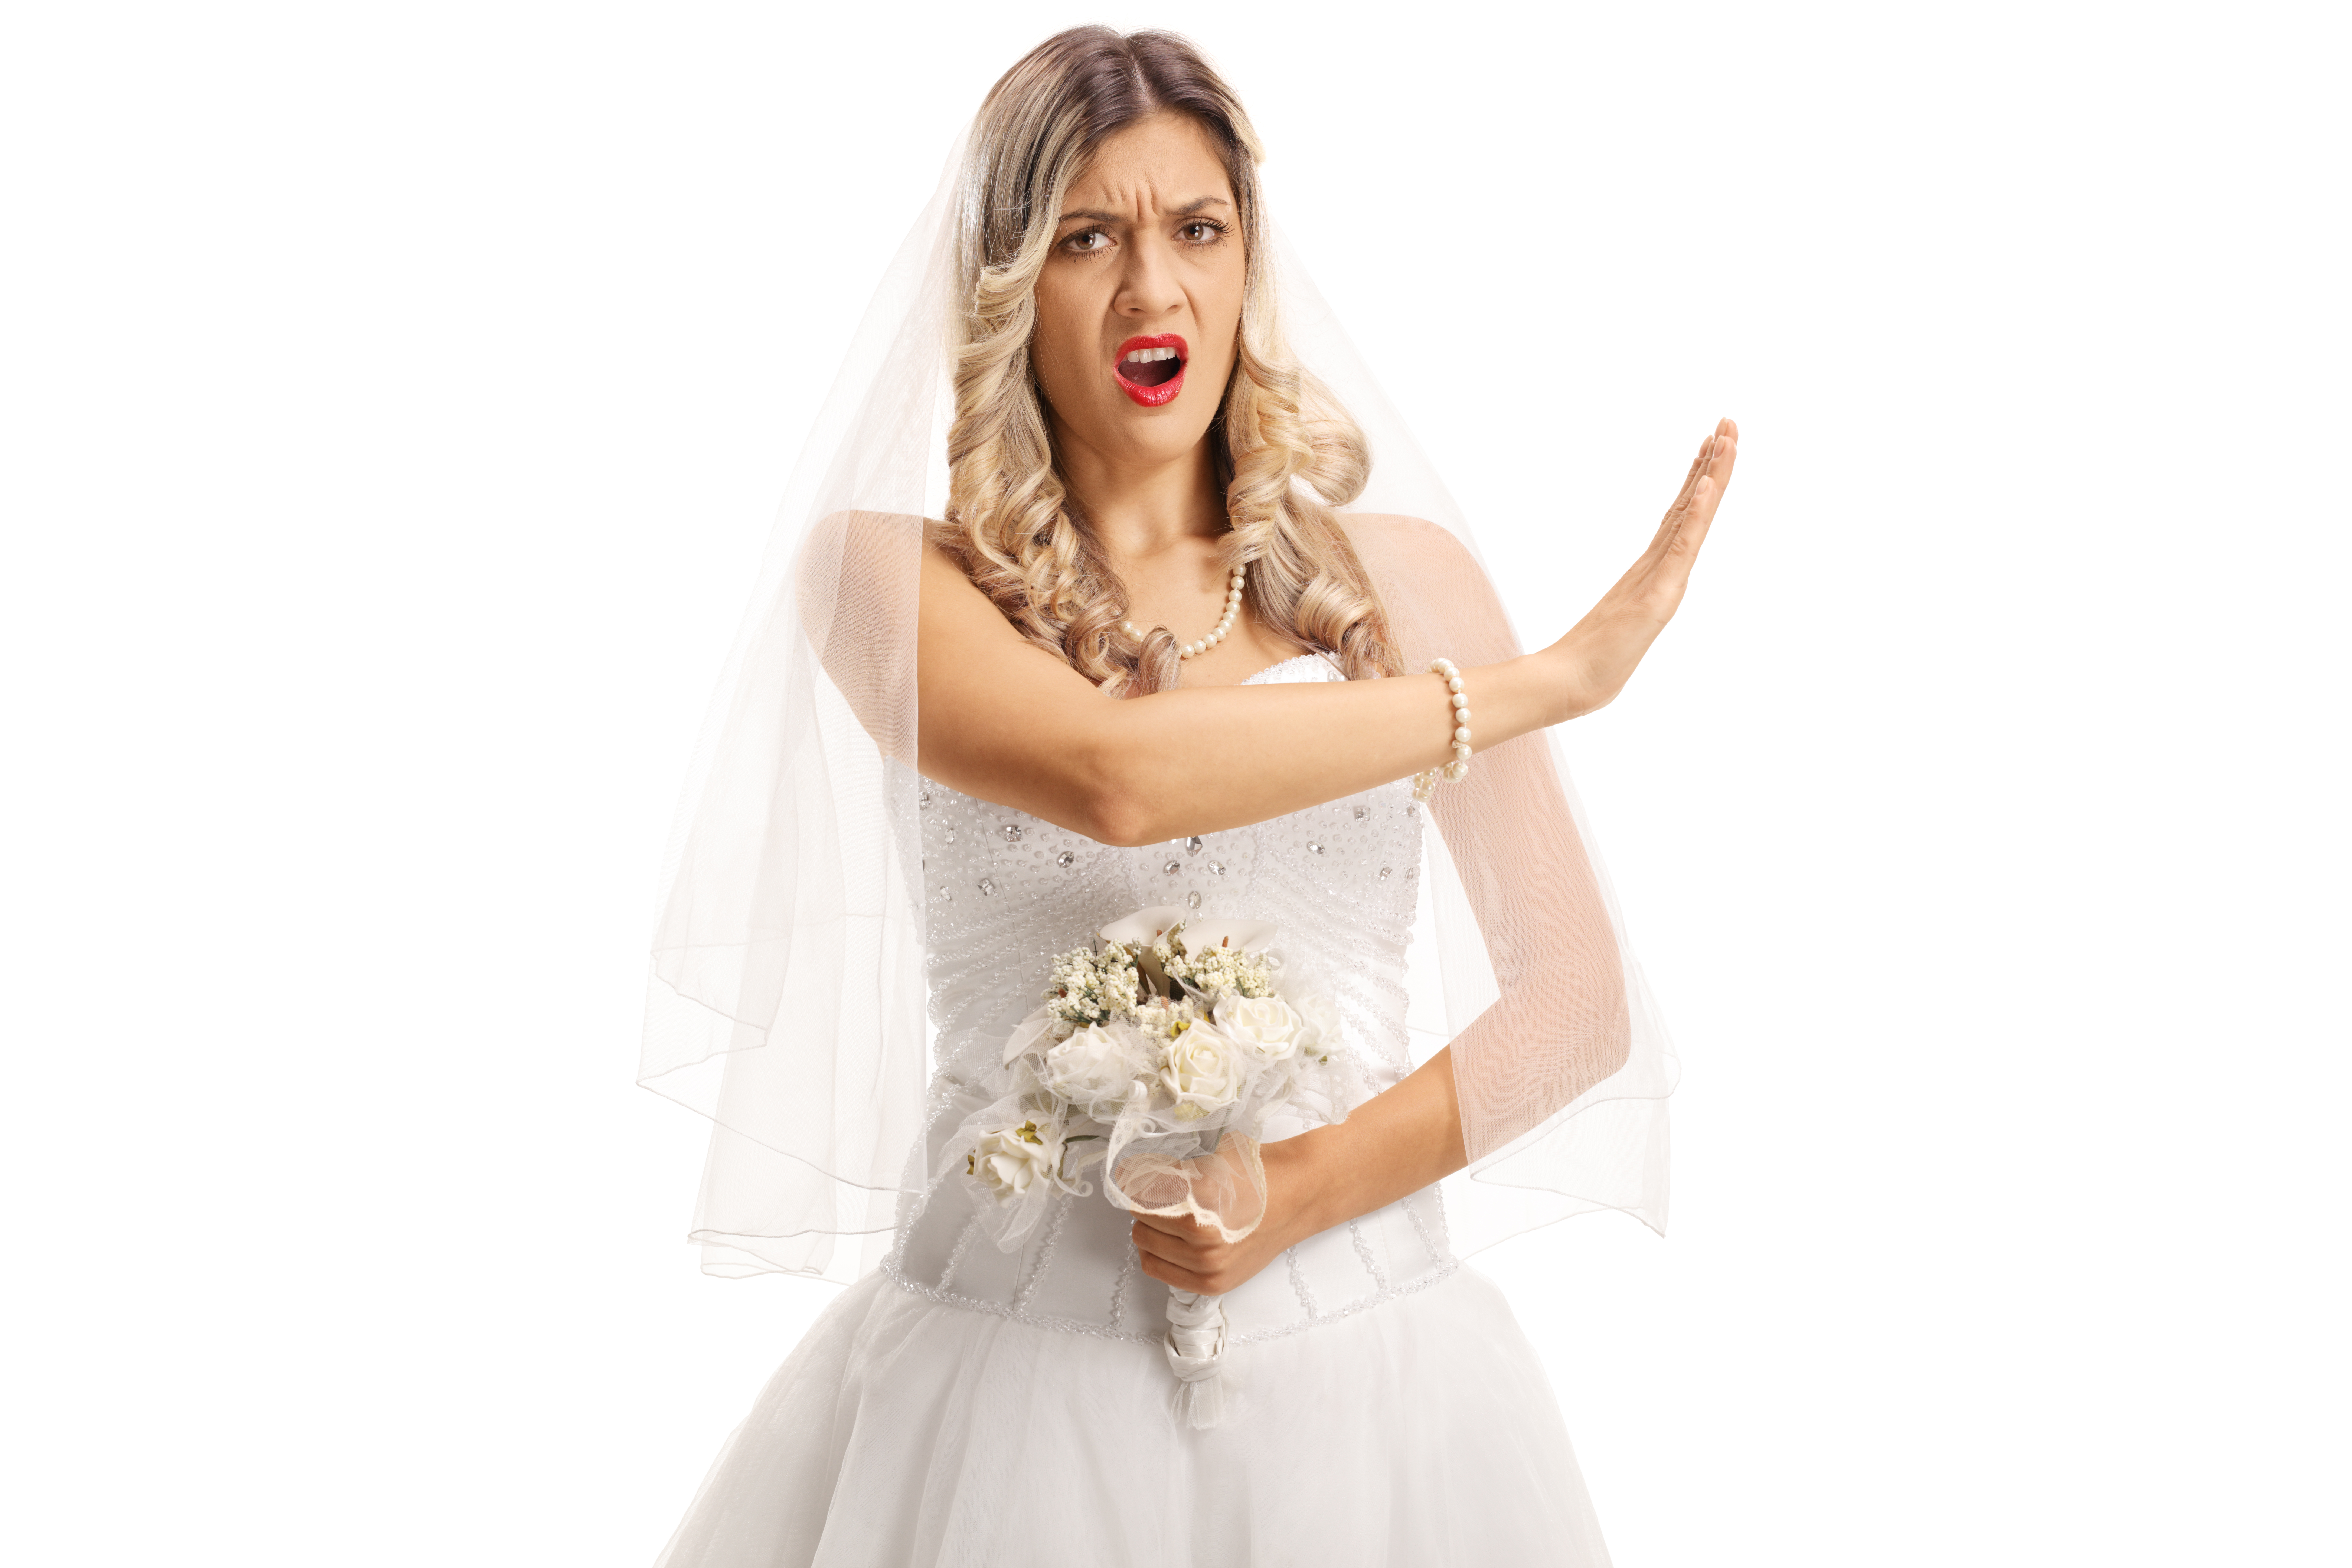 Una novia enfadada enseñando a alguien a parar | Fuente: Shutterstock